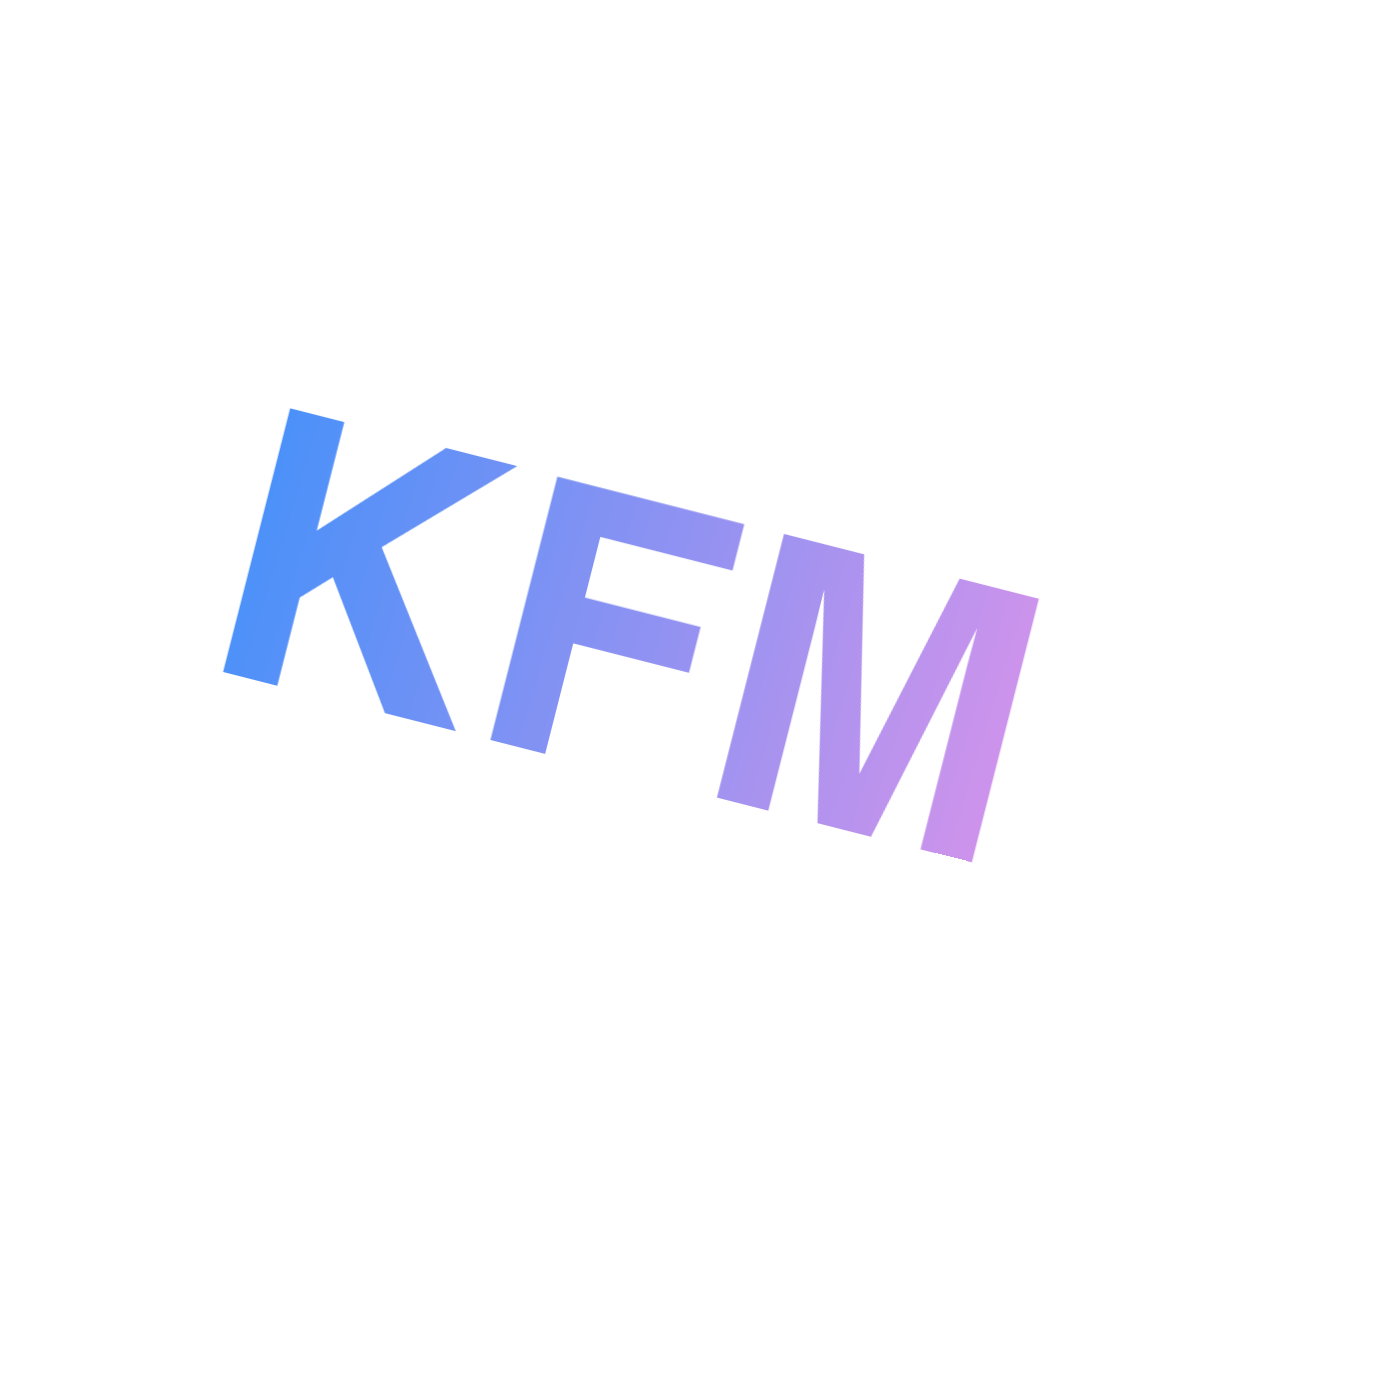 KFM Douglas